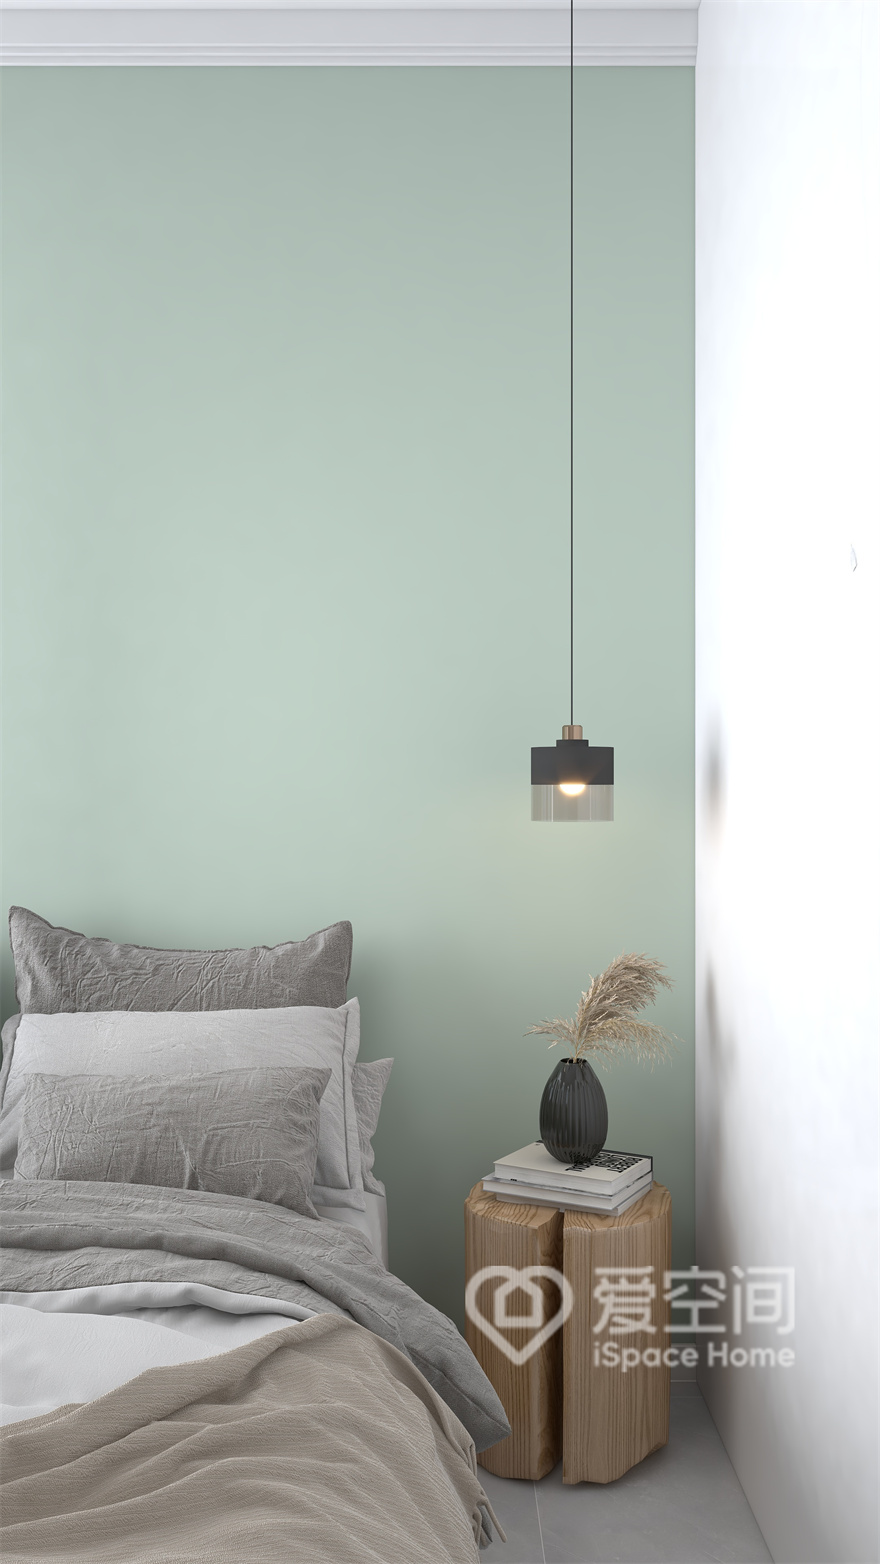 薄荷绿的背景墙令主卧显得清新自在，在灰白色床品、垂钓灯具的烘托下，卧室显稳重质朴，意蕴悠长。